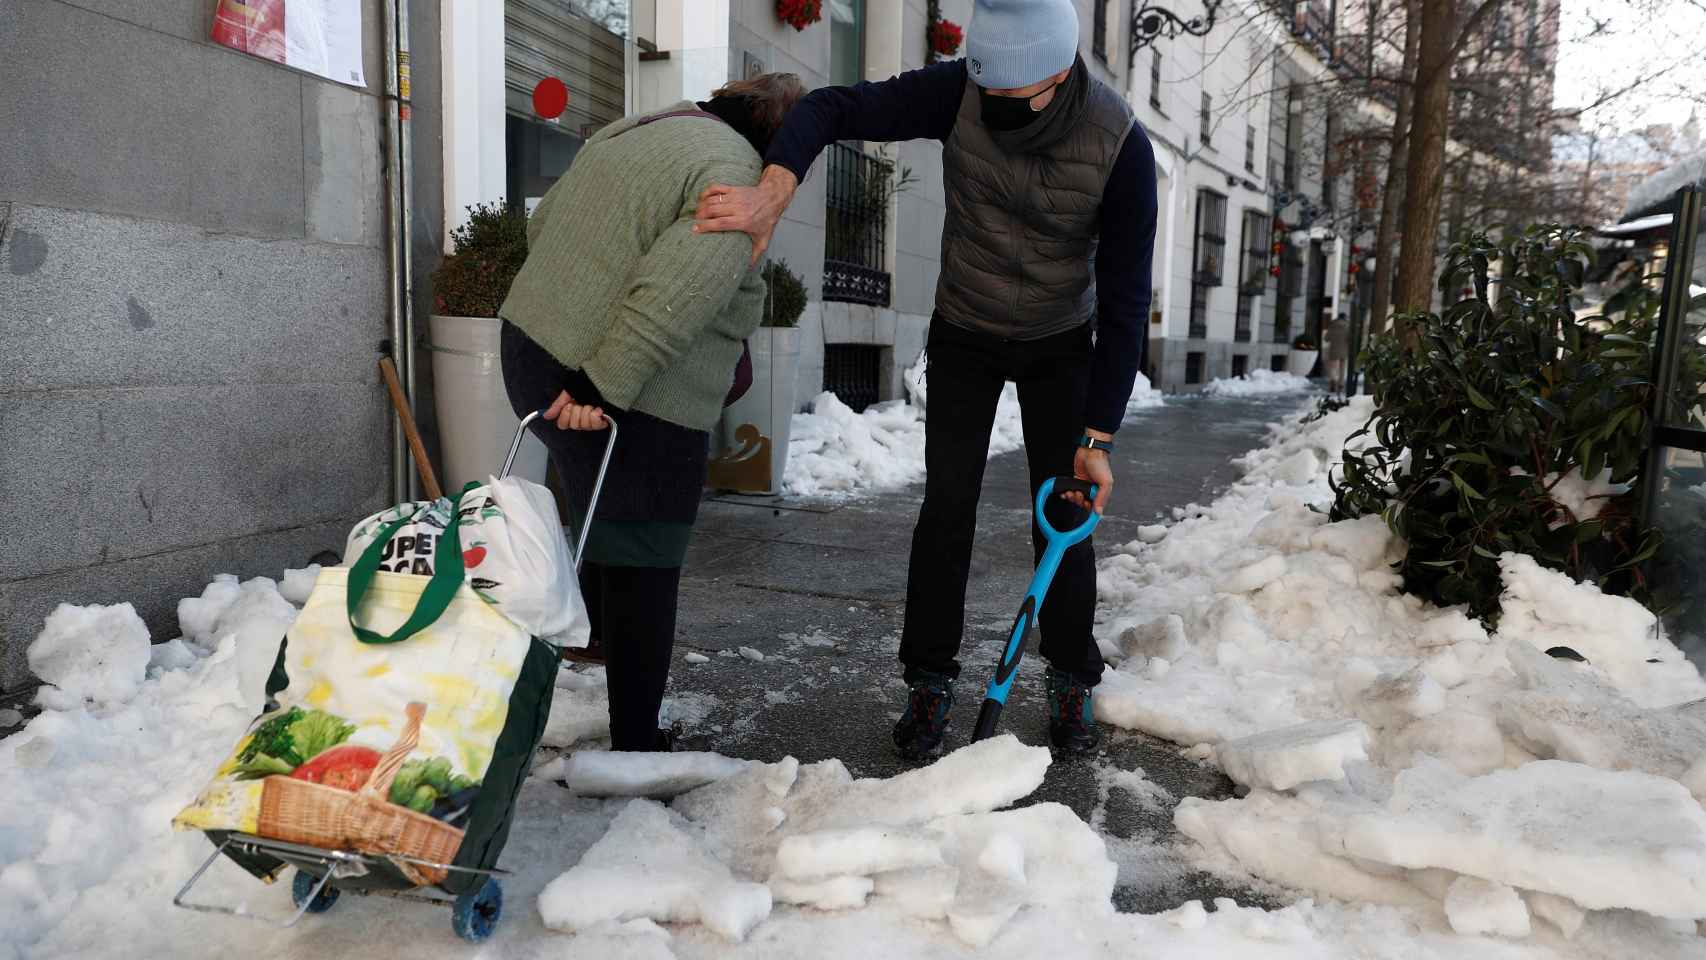 Una mujer camina con un carro de la compra mientras un hombre retira nieve de la acera este lunes en Madrid.